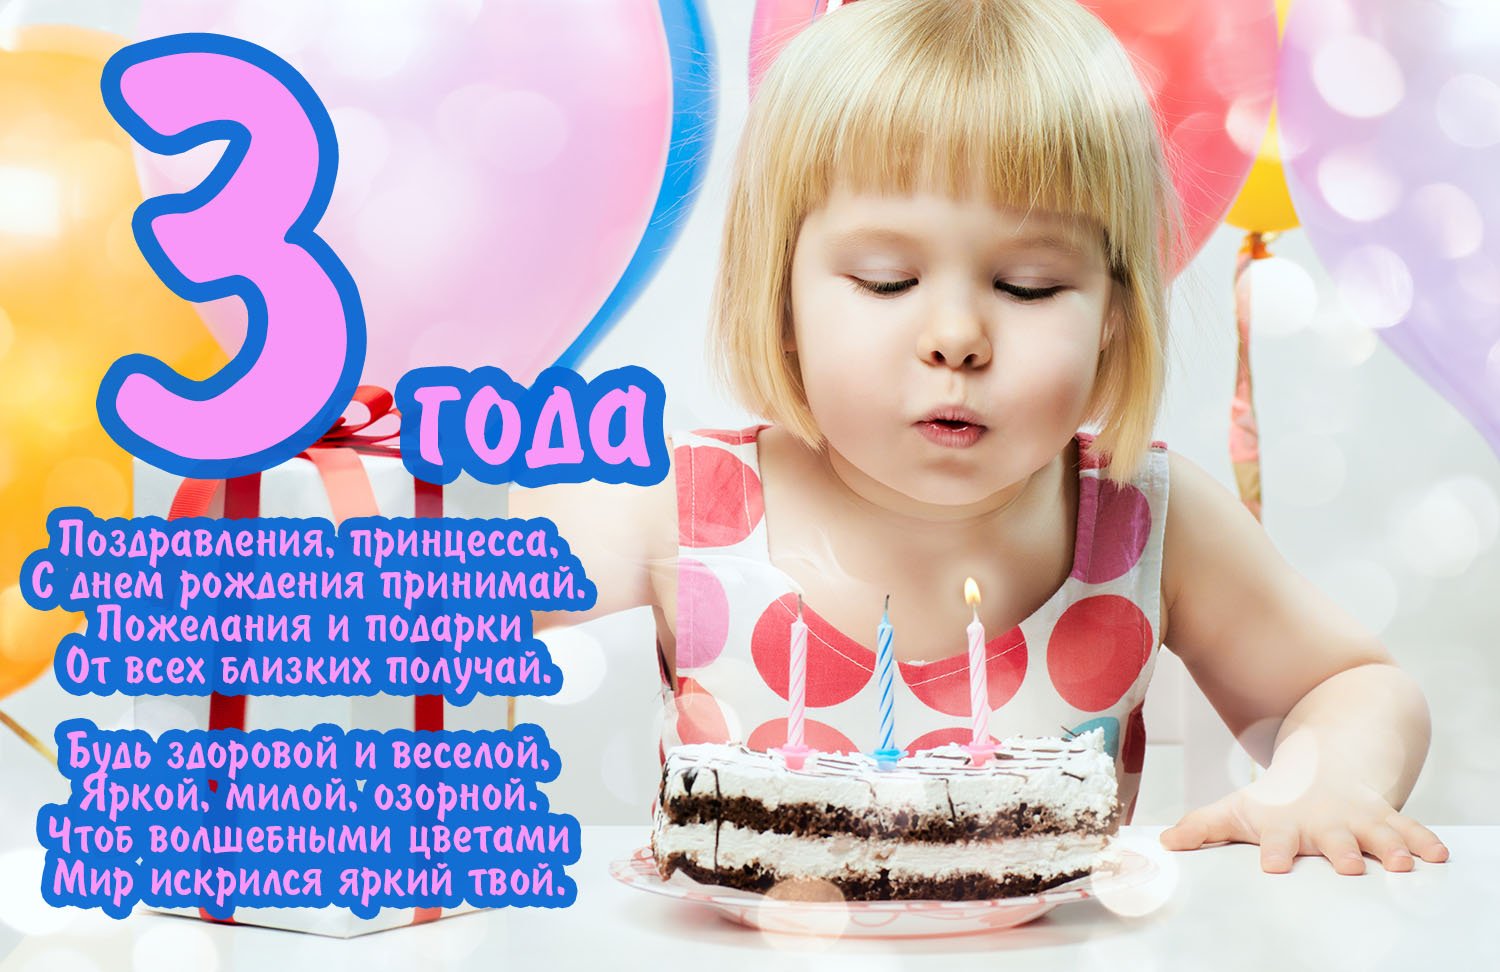 3 года девочке: открытки с днем рождения - инстапик